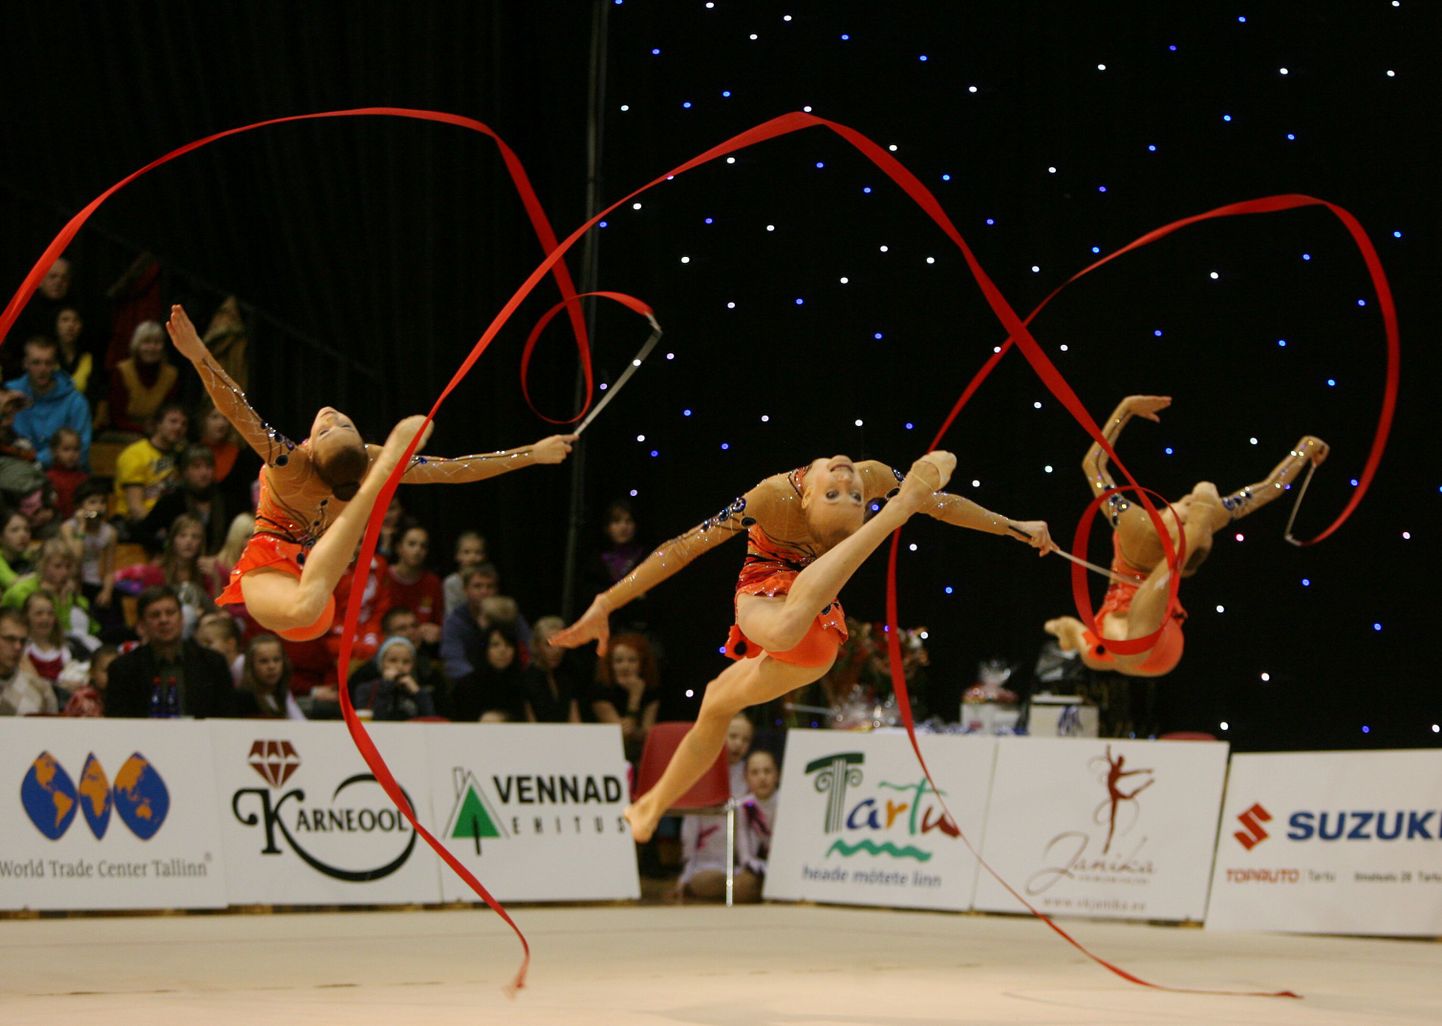 Международный турнир по гимнастике Miss Valentine в Тарту. Иллюстративное фото.